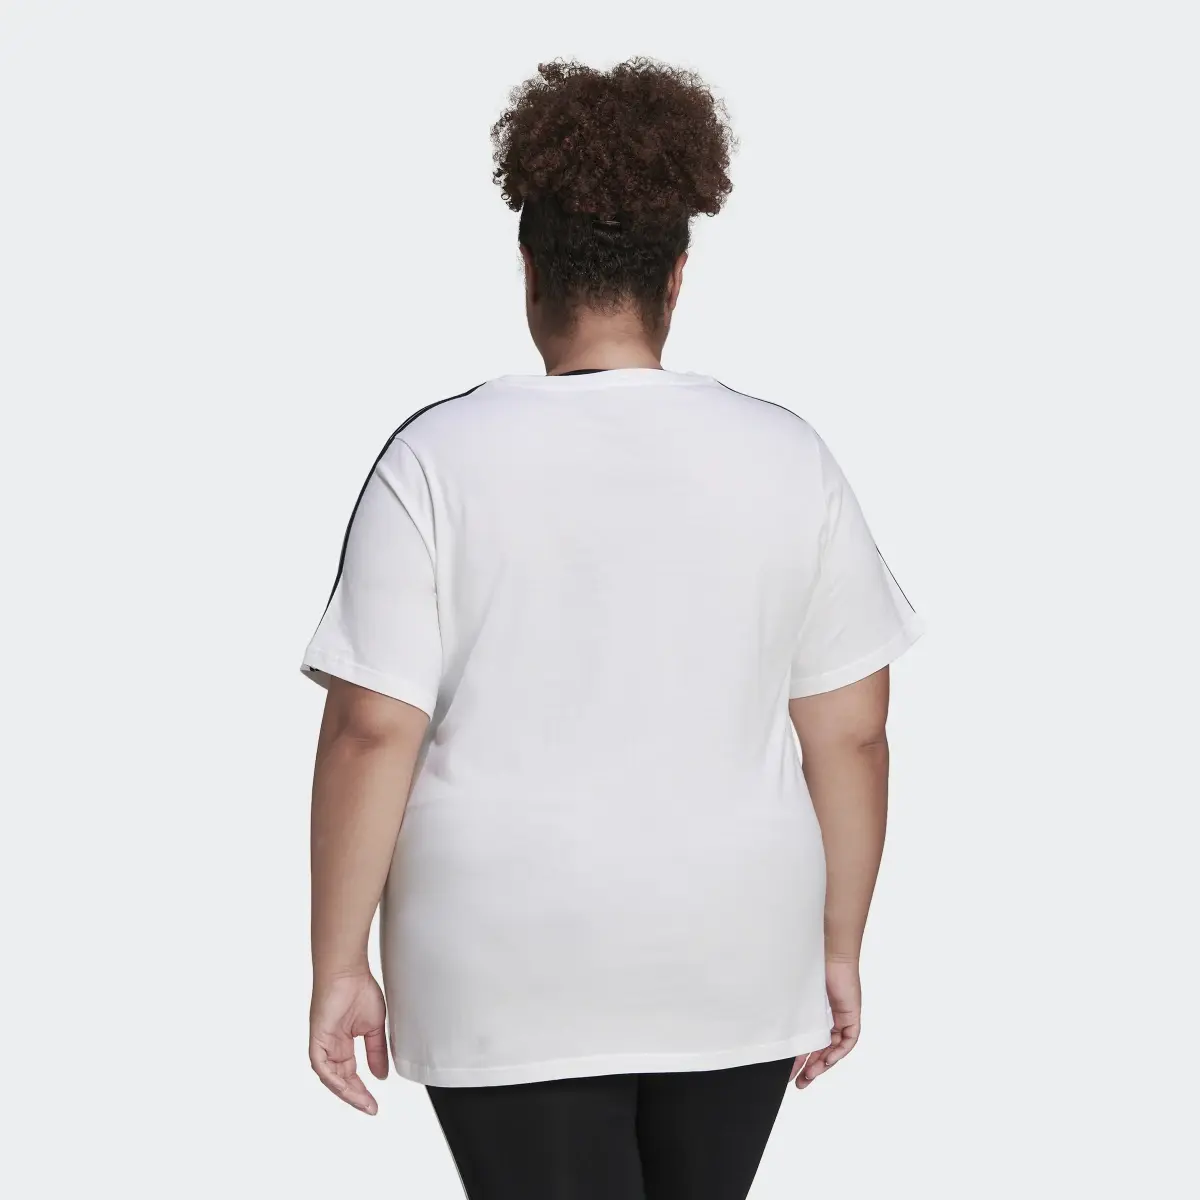 Adidas Camiseta Essentials Slim 3 bandas (Tallas grandes). 3